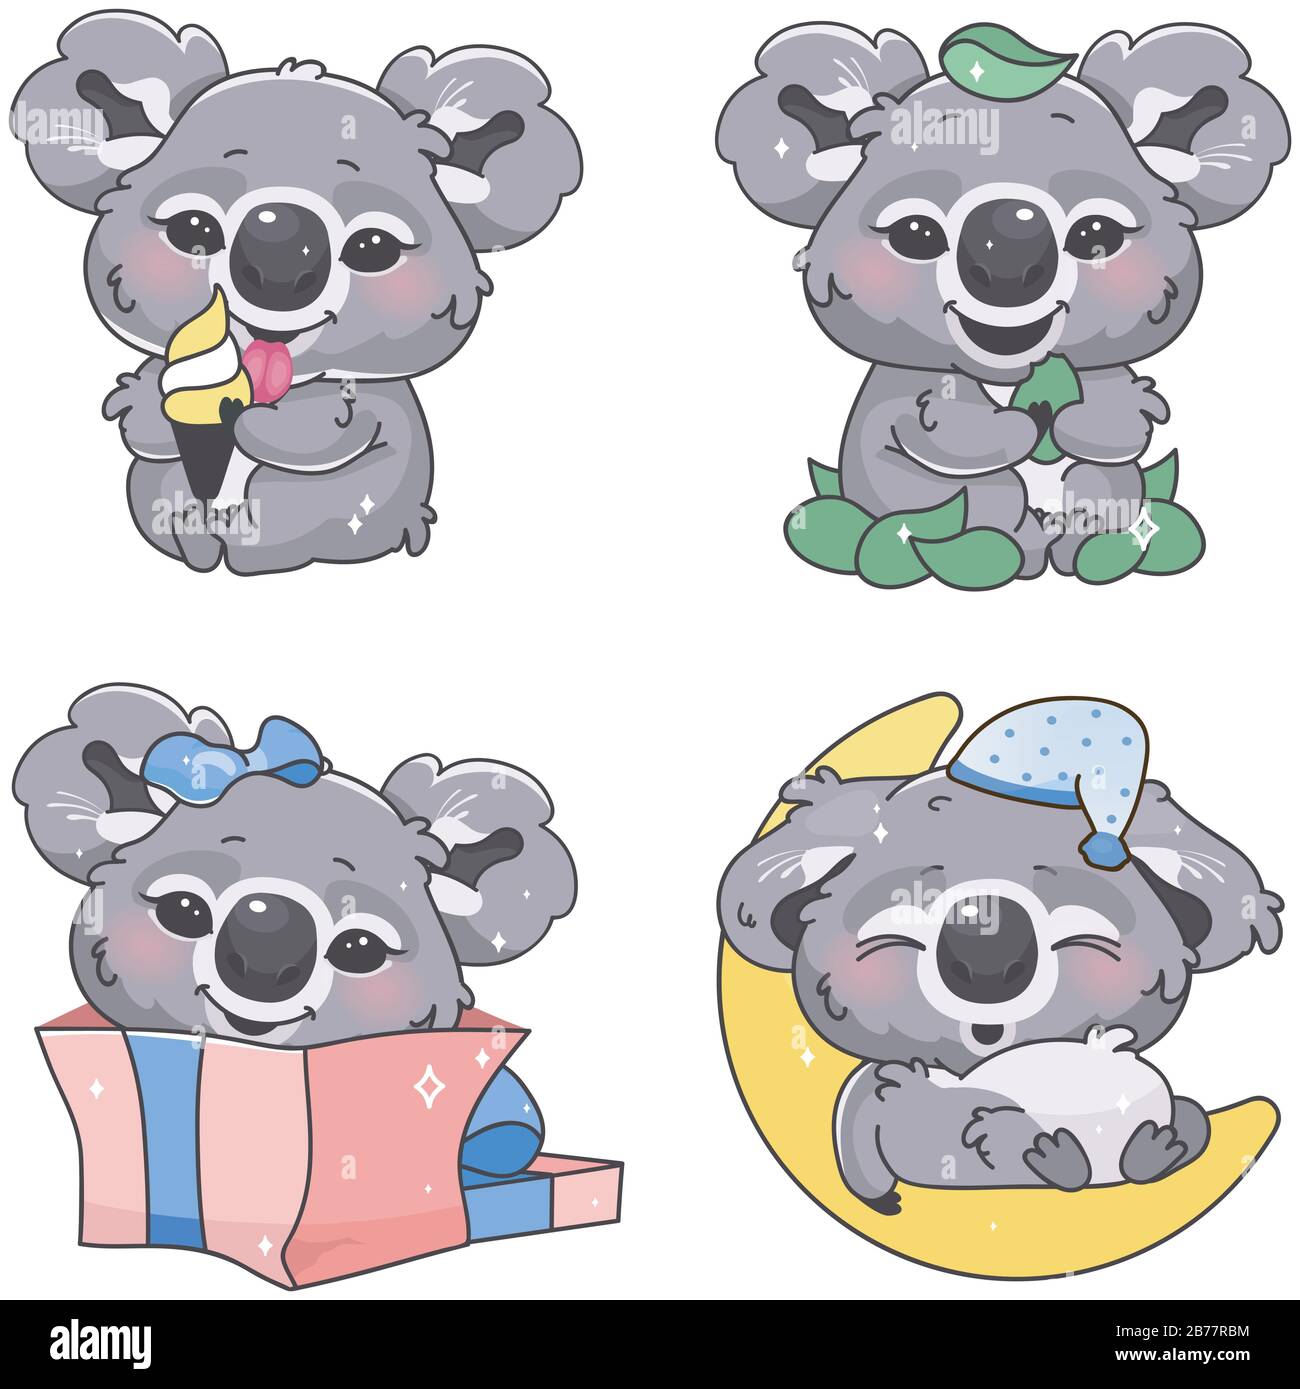 Adventures of the Little Koala - Nick Jr 1989 #anime #80stv - YouTube